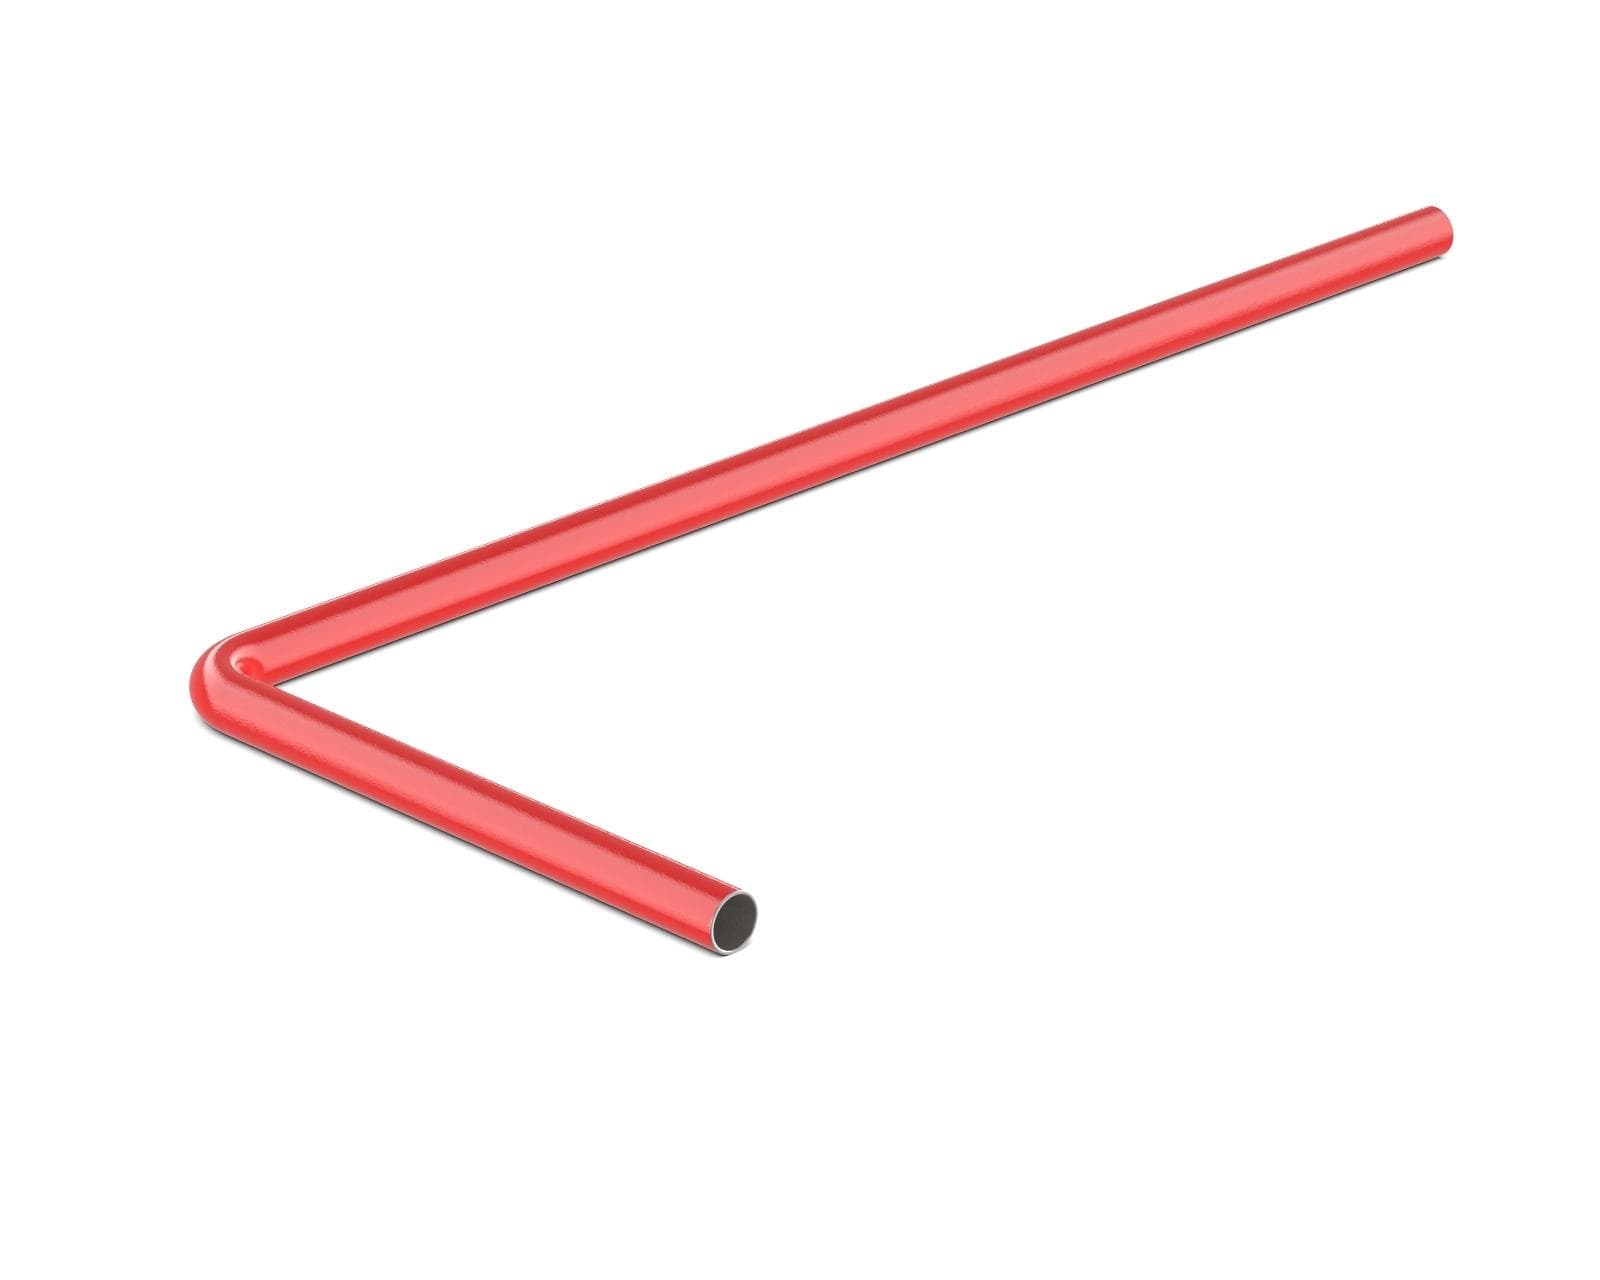 PrimoChill SX Pre-Bent 14mm ID x 16mm OD Rigid Copper Tube - Razor Red